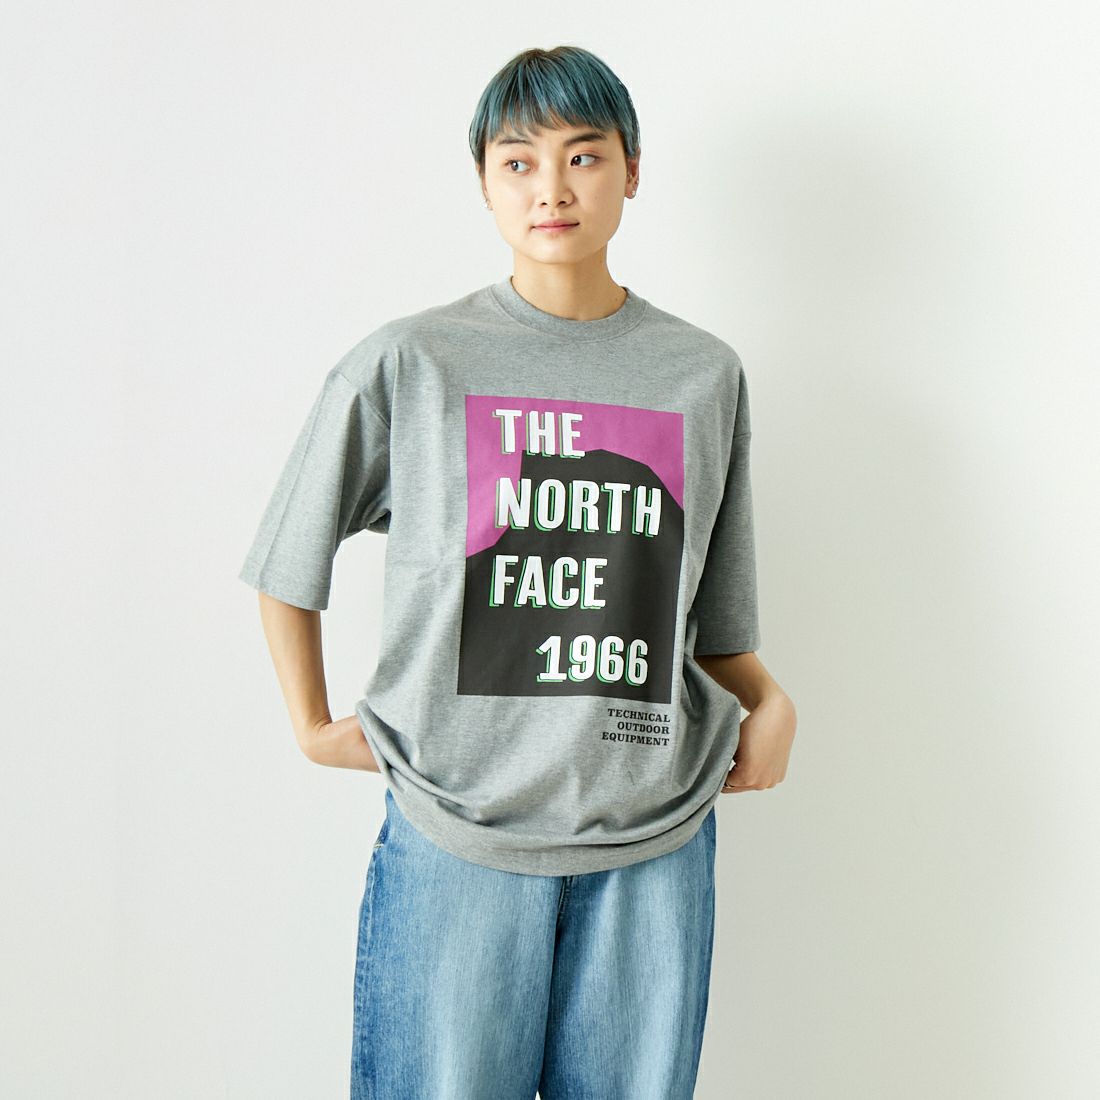 THE NORTH FACE [ザ ノースフェイス] ショートスリーブ TNFフライヤーTシャツ [NT32432]